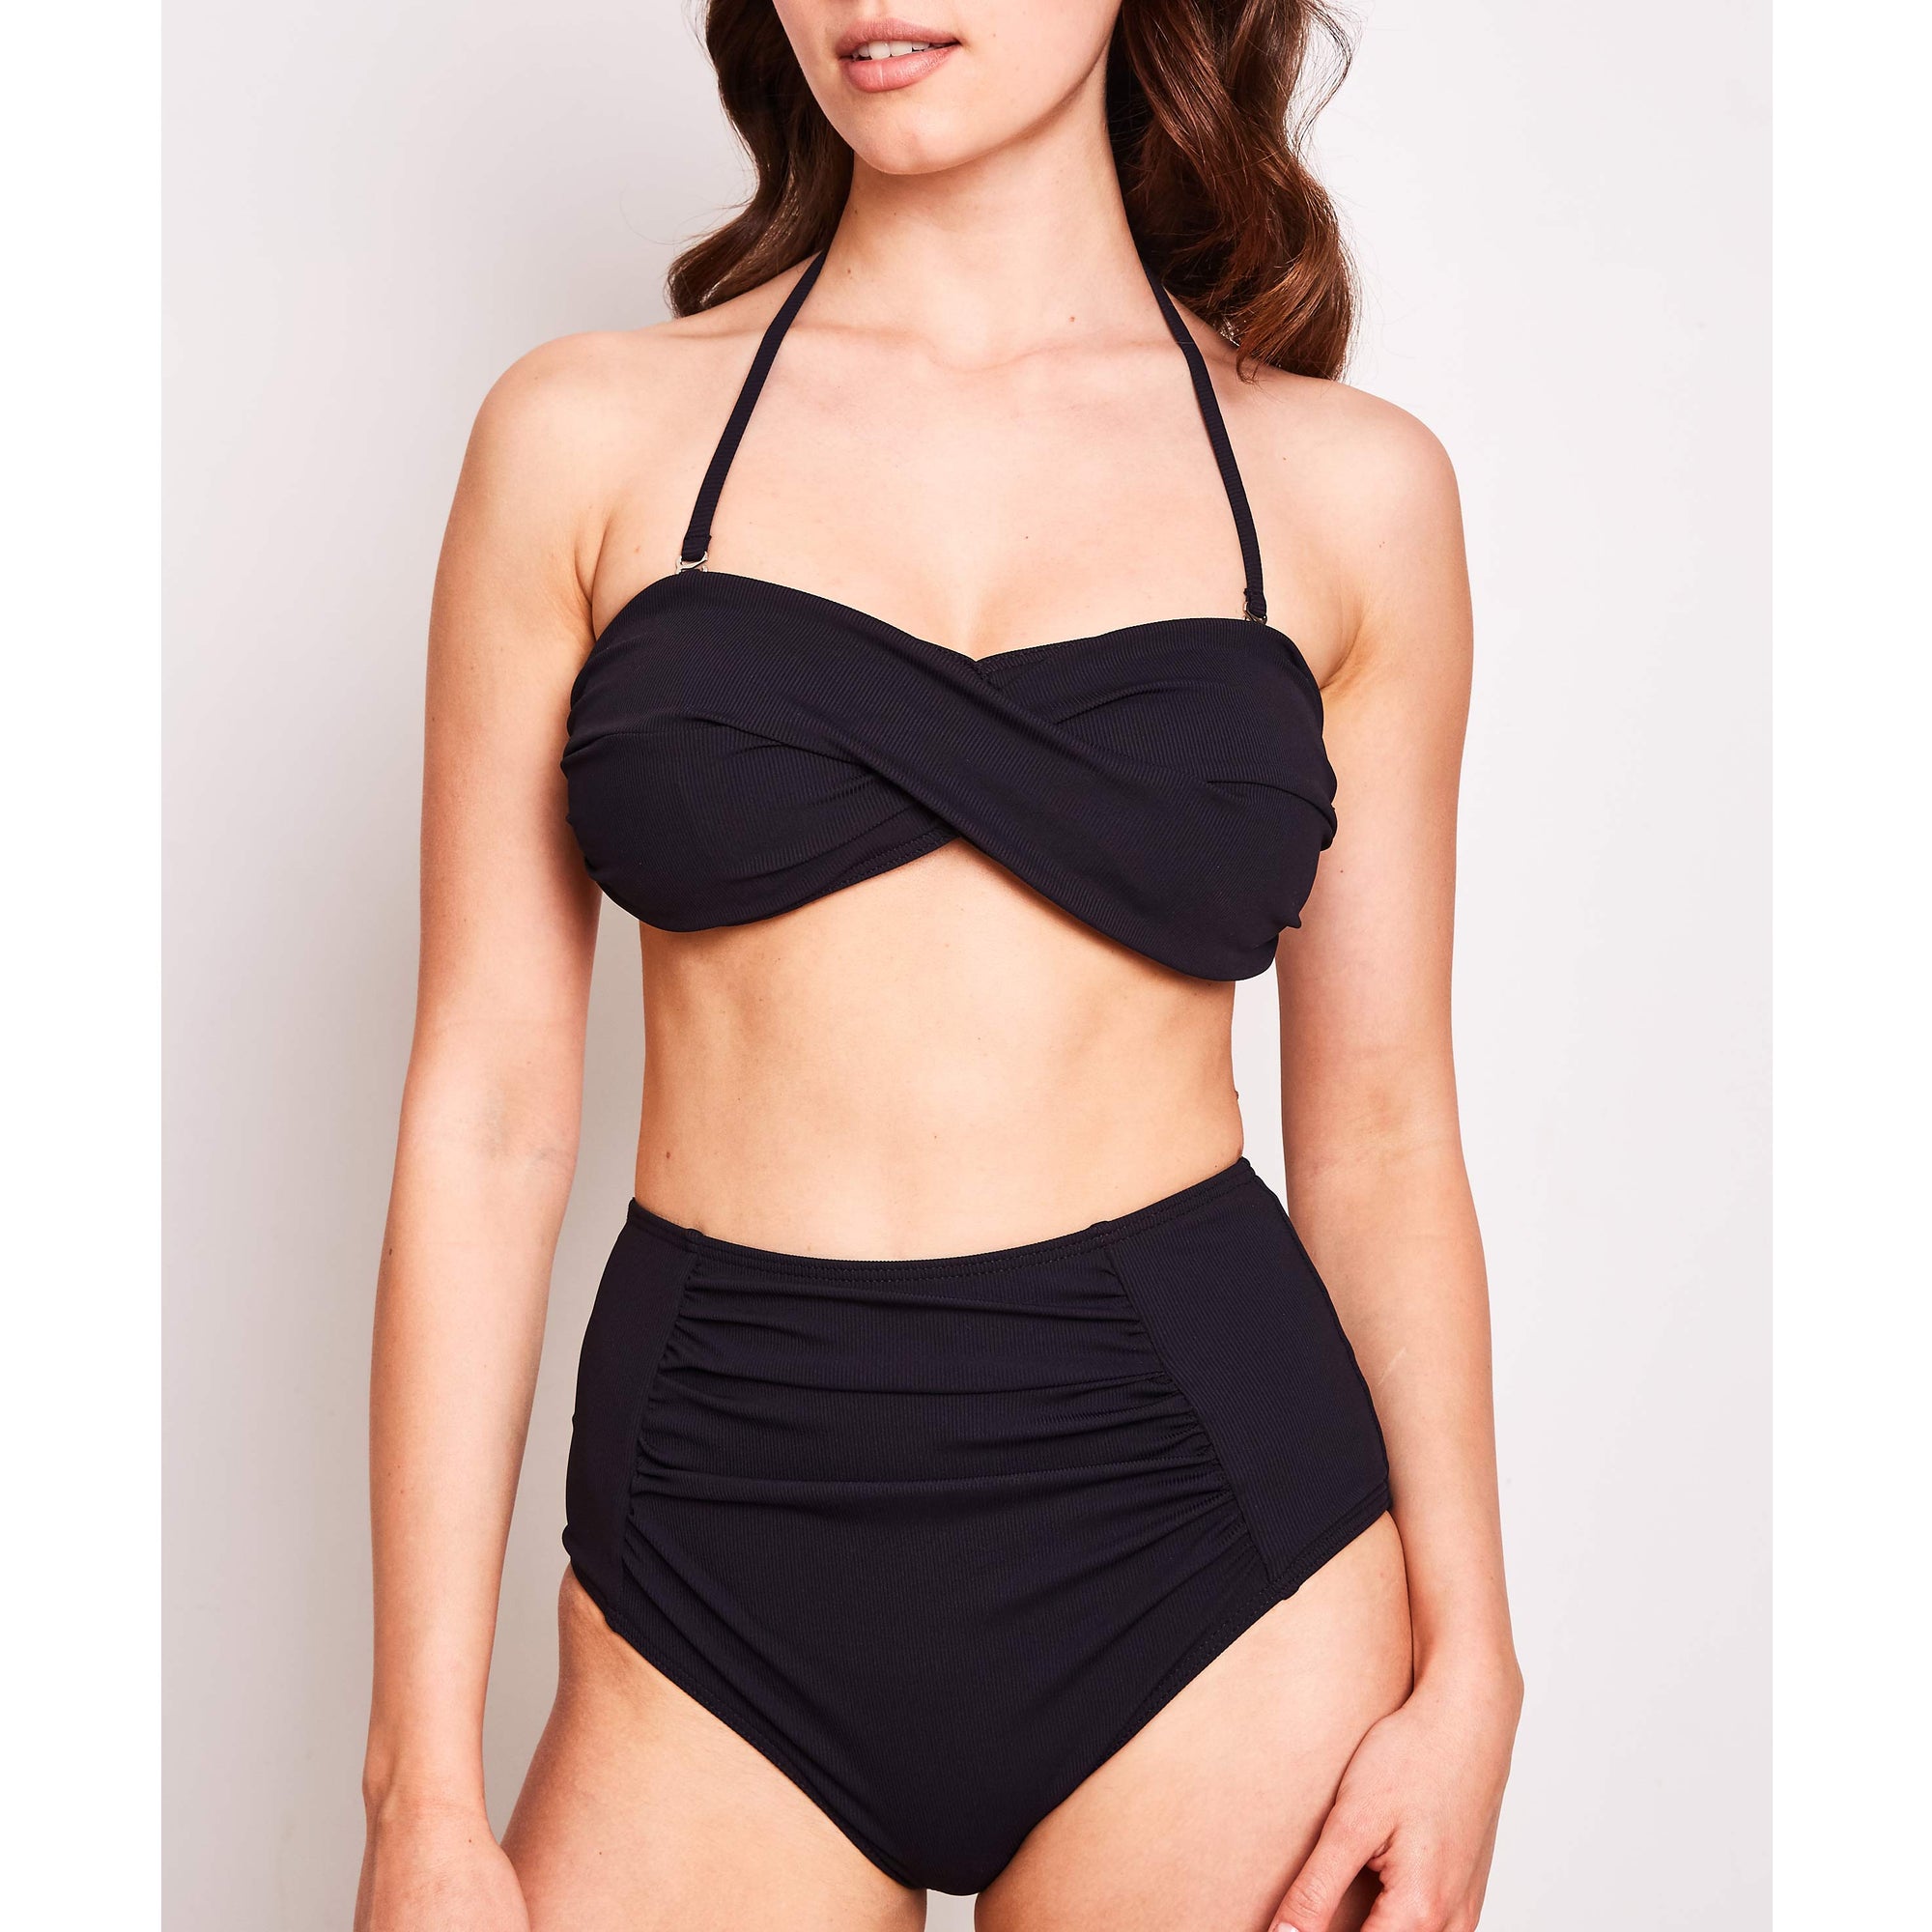 Erica-bikini-mini-rib-black-2-contessa-volpi-summer-swimwear-collection